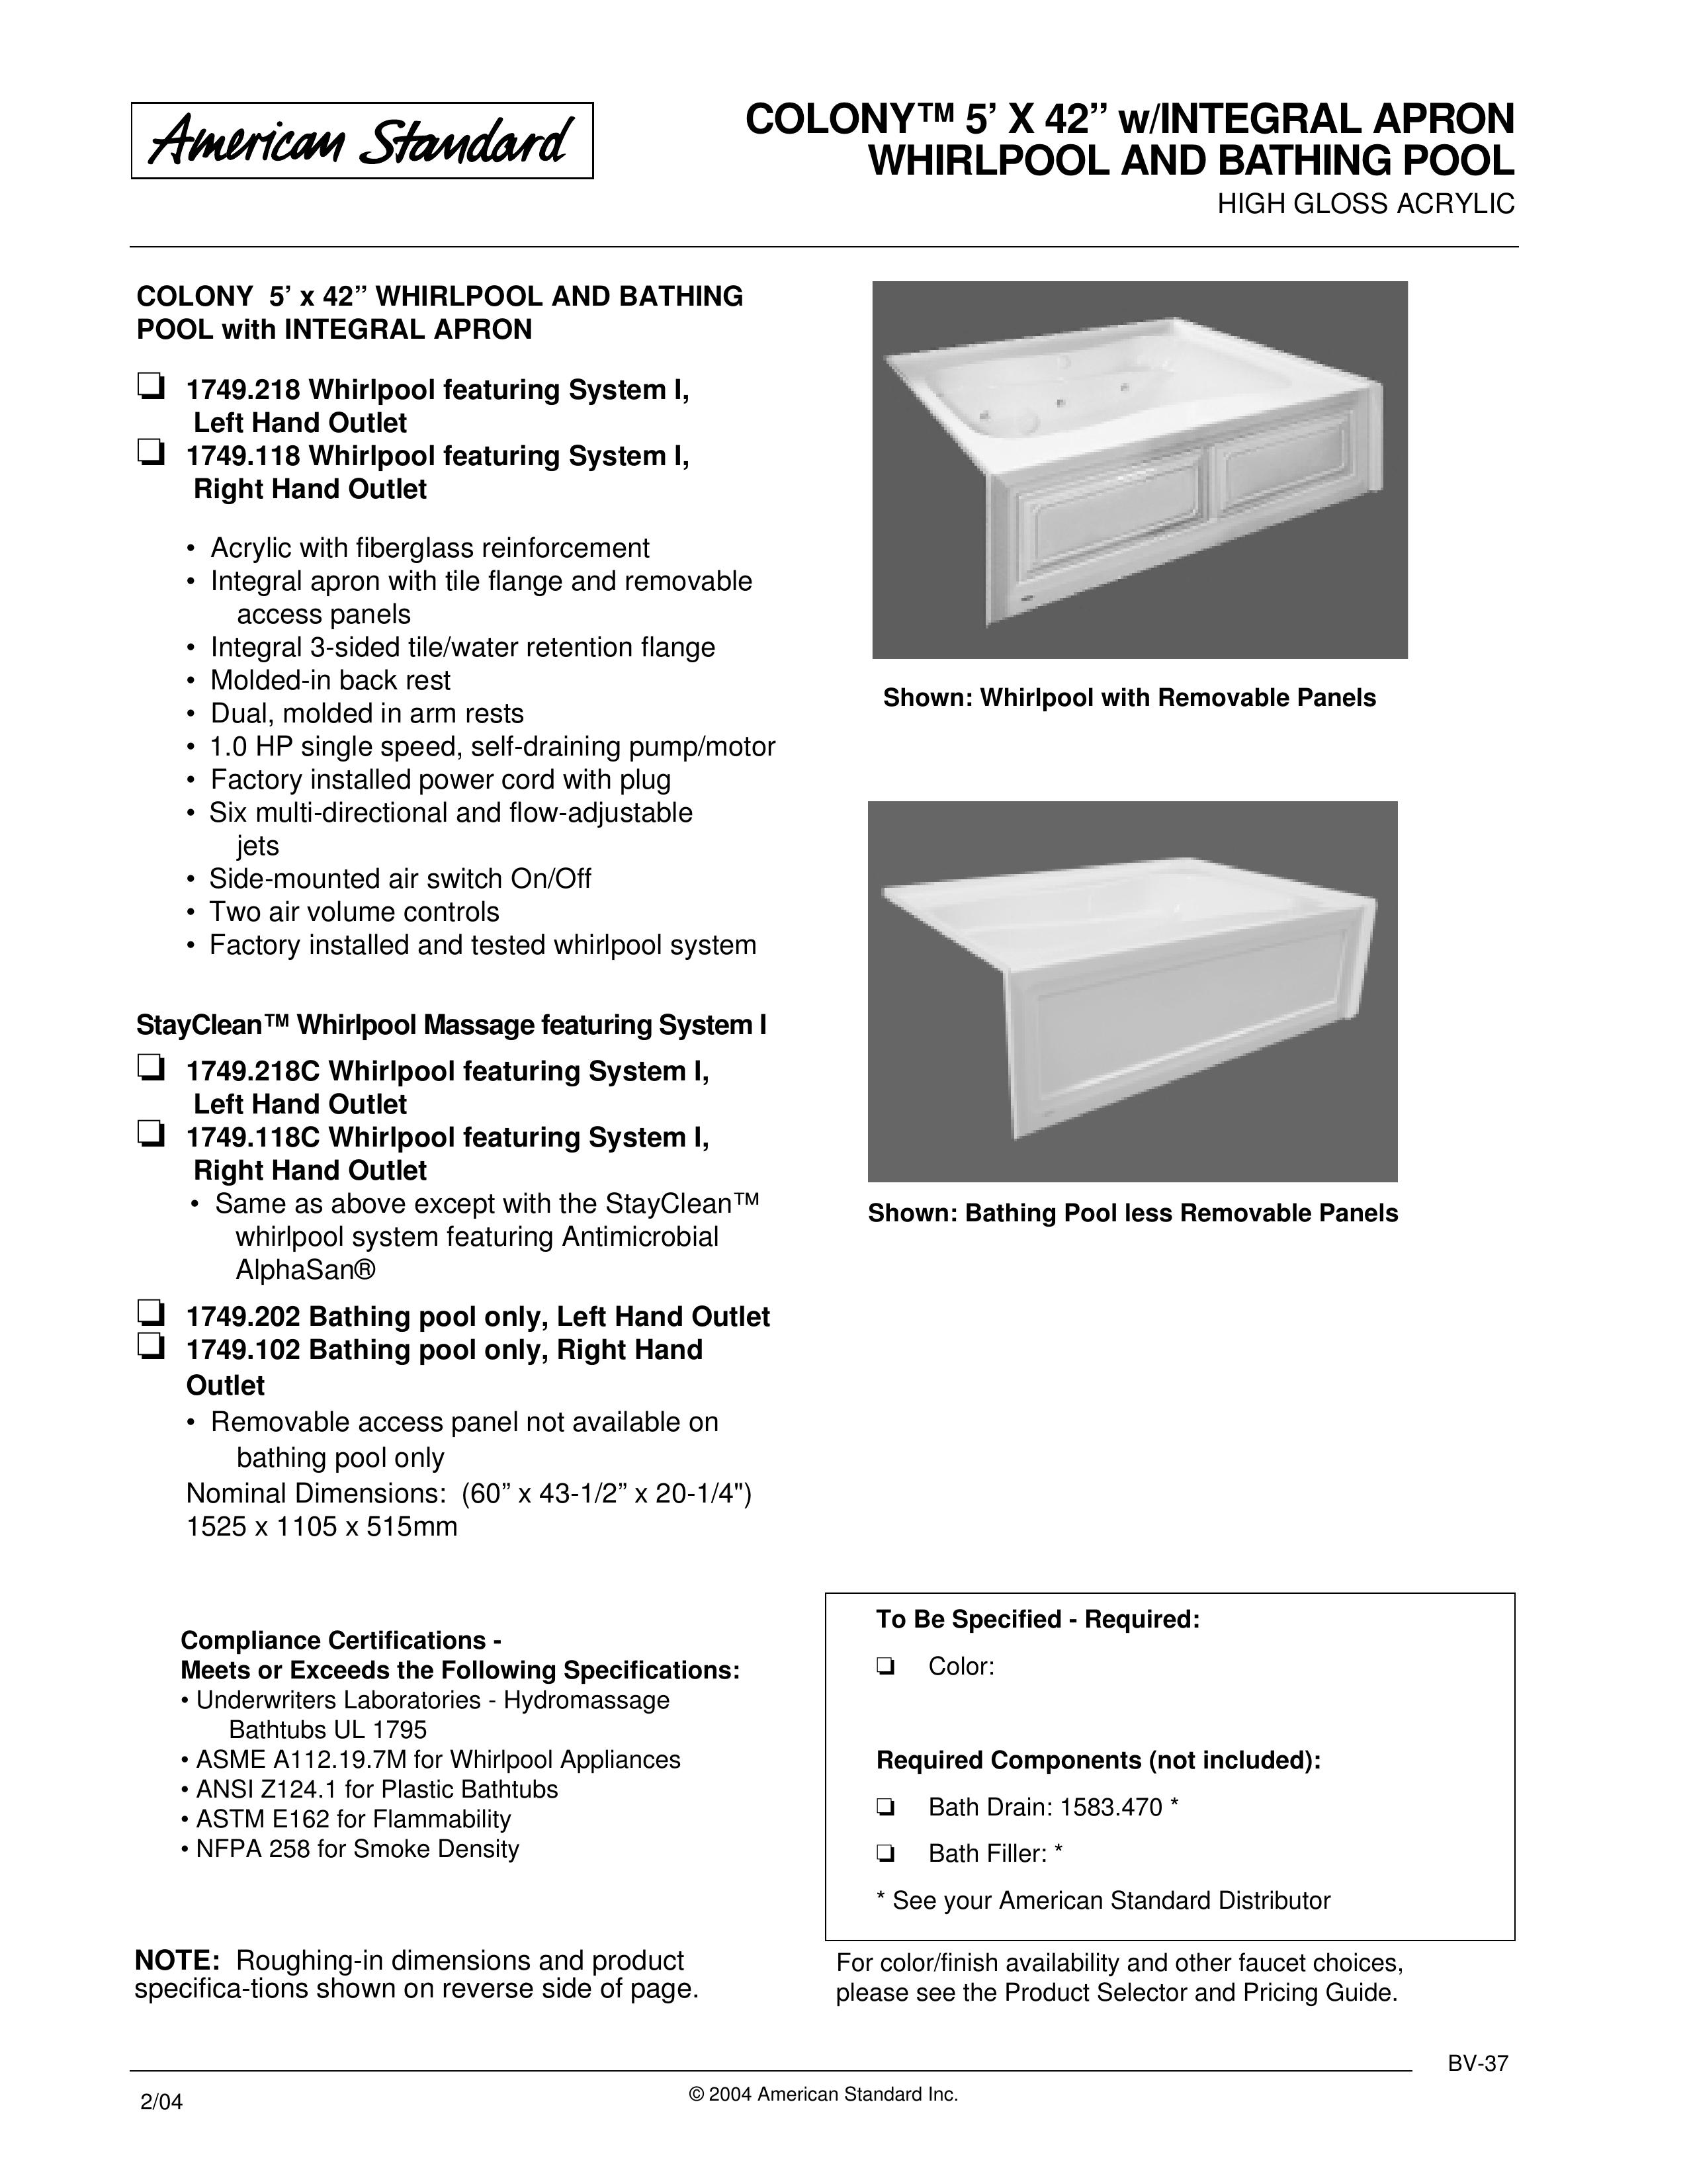 American Standard 1749.218C Hot Tub User Manual